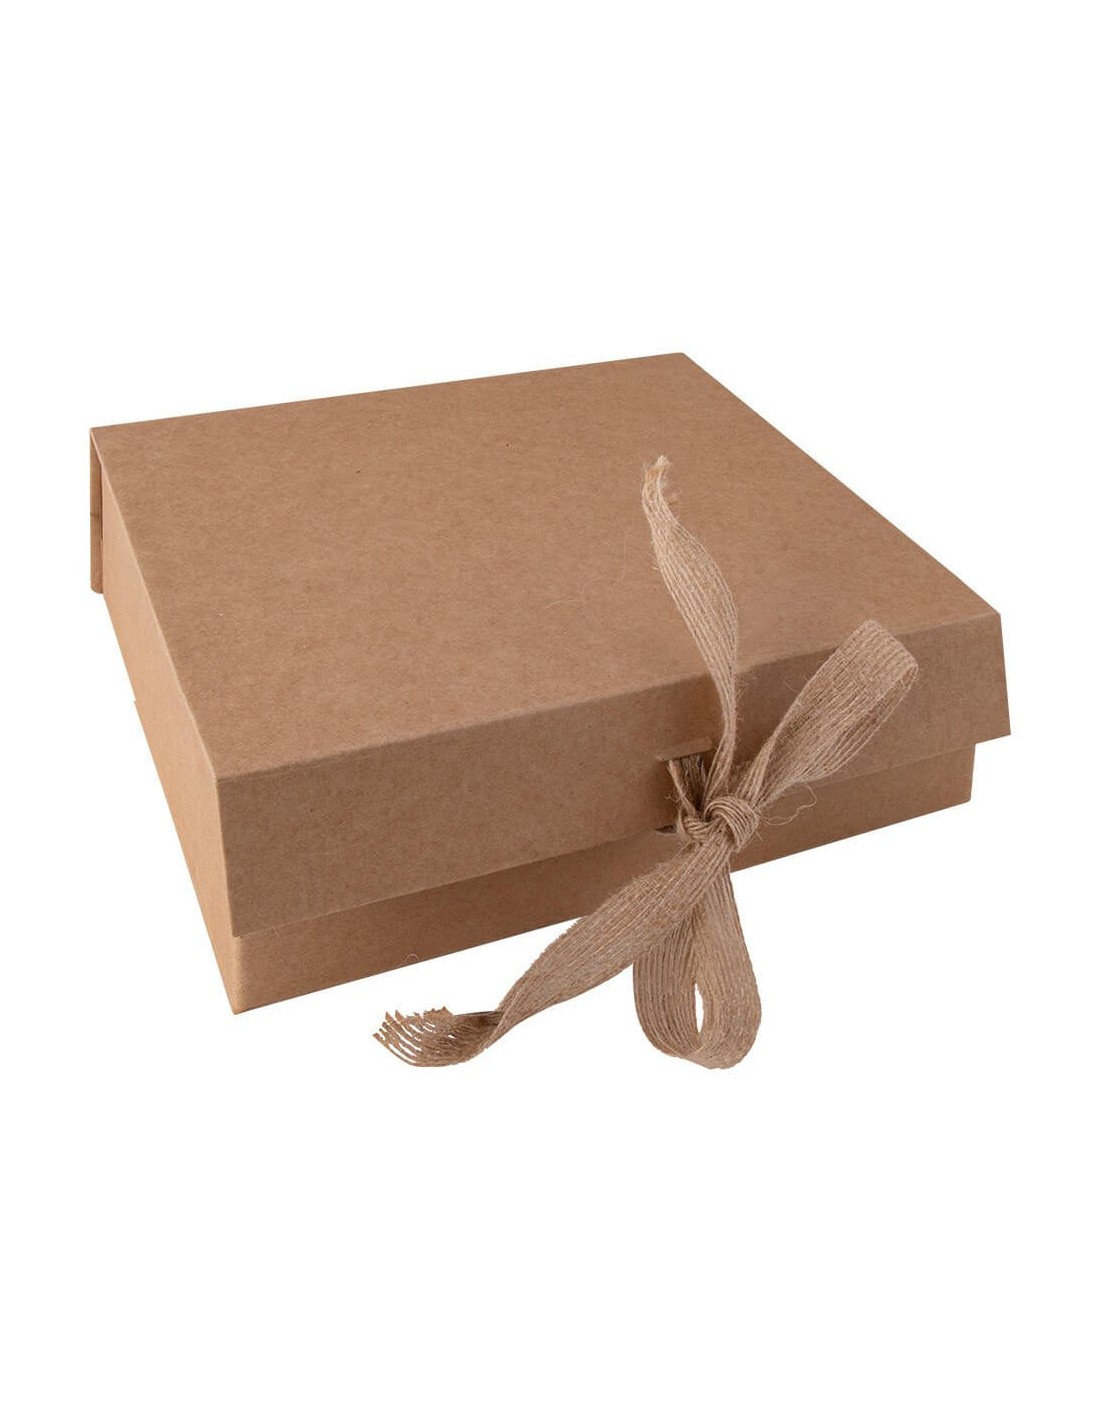 Caja de Cartón | Cajas y Bolsas Personalizadas